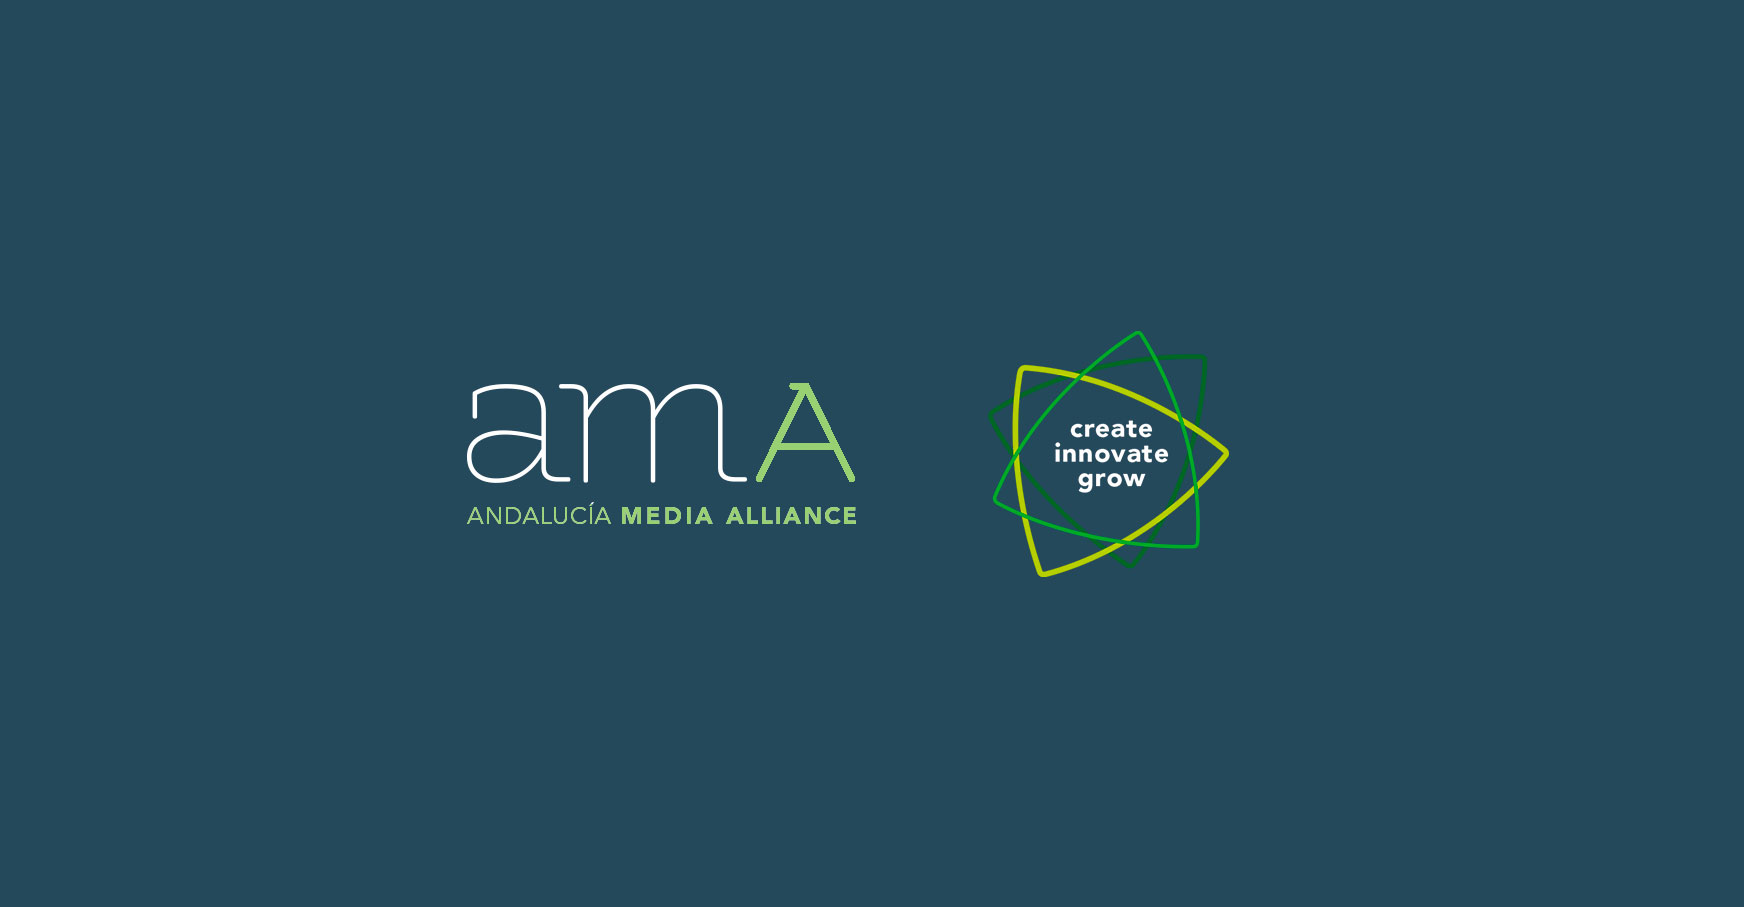 Presidencia de Andalucía Media Alliance